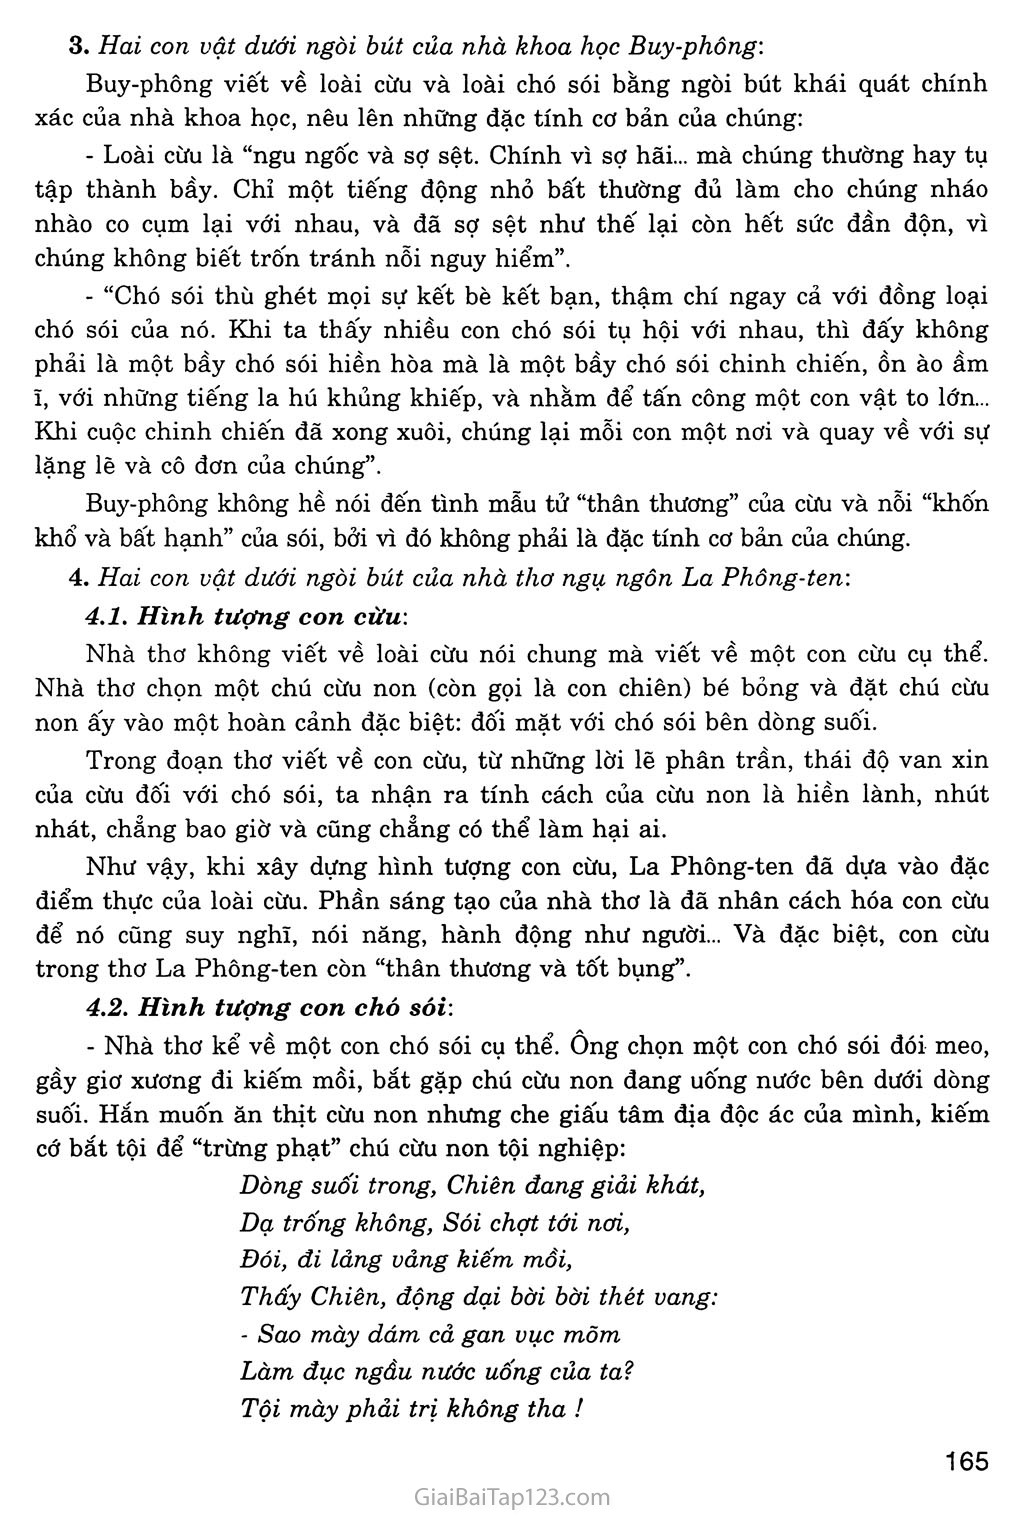 Chó sói và cừu trong thơ ngụ ngôn của La Phông - ten (trích) trang 2